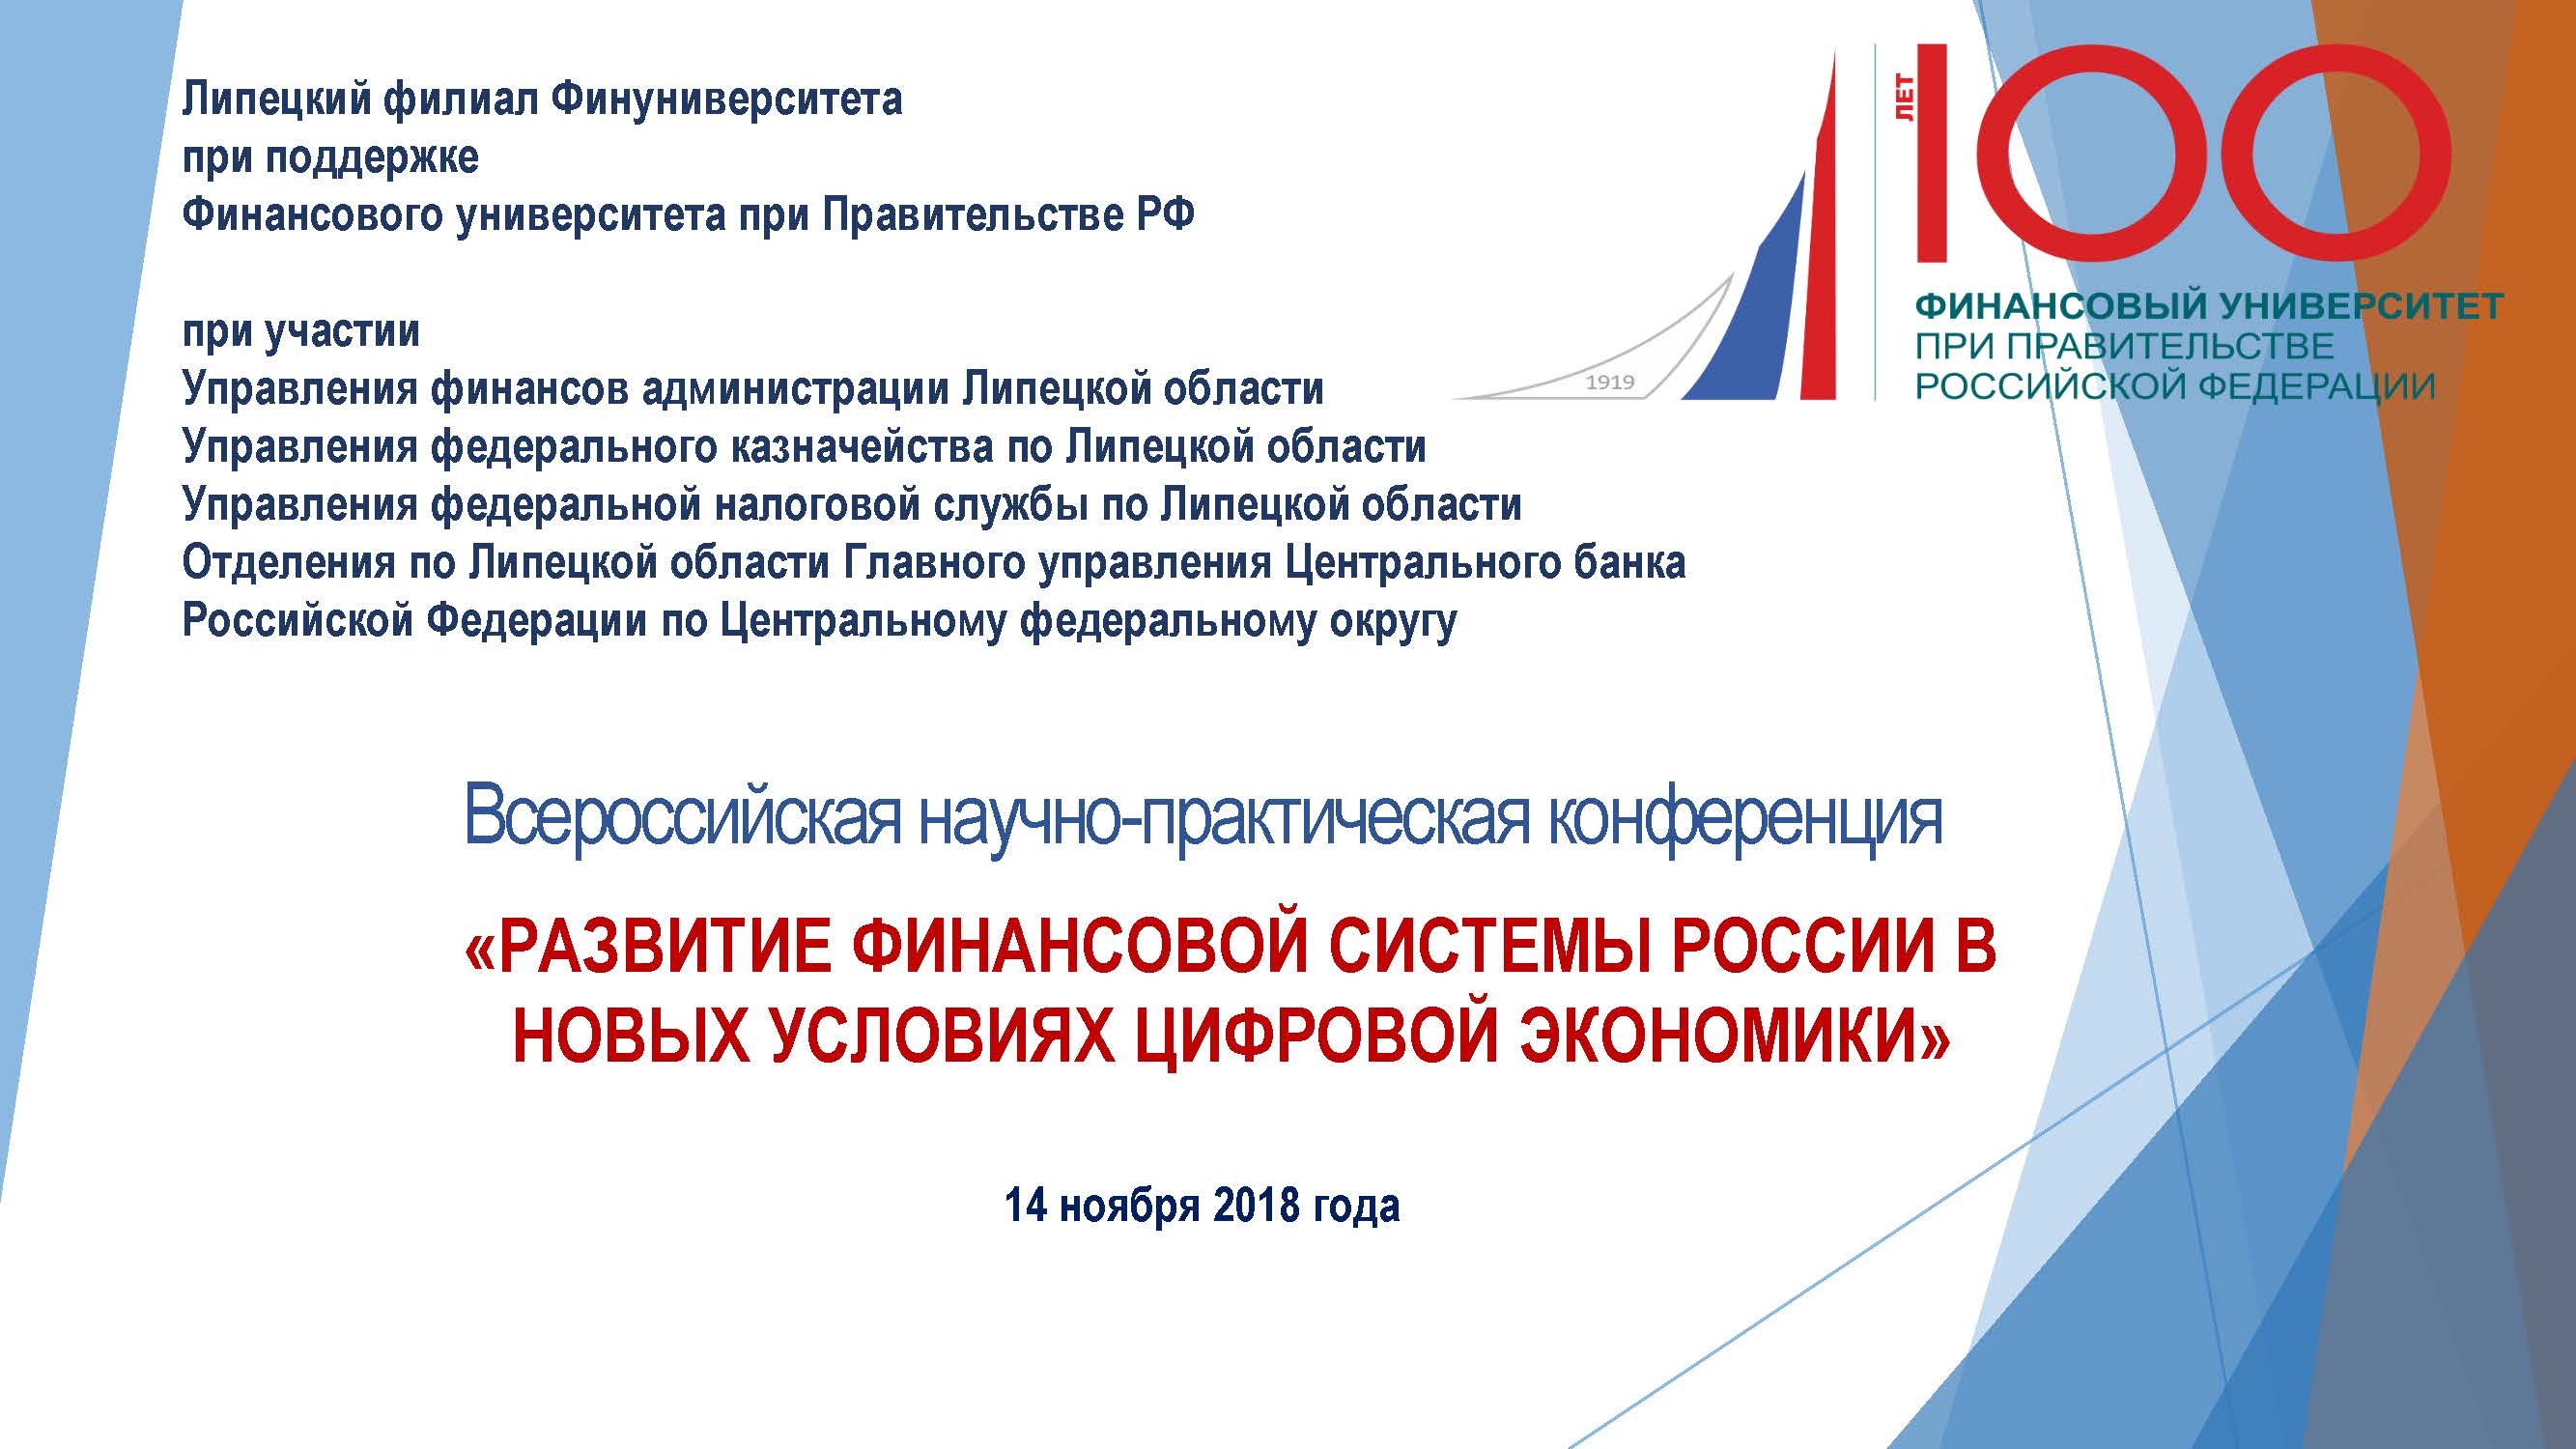 Всероссийская научно-практическая конференция 14 ноября 2018